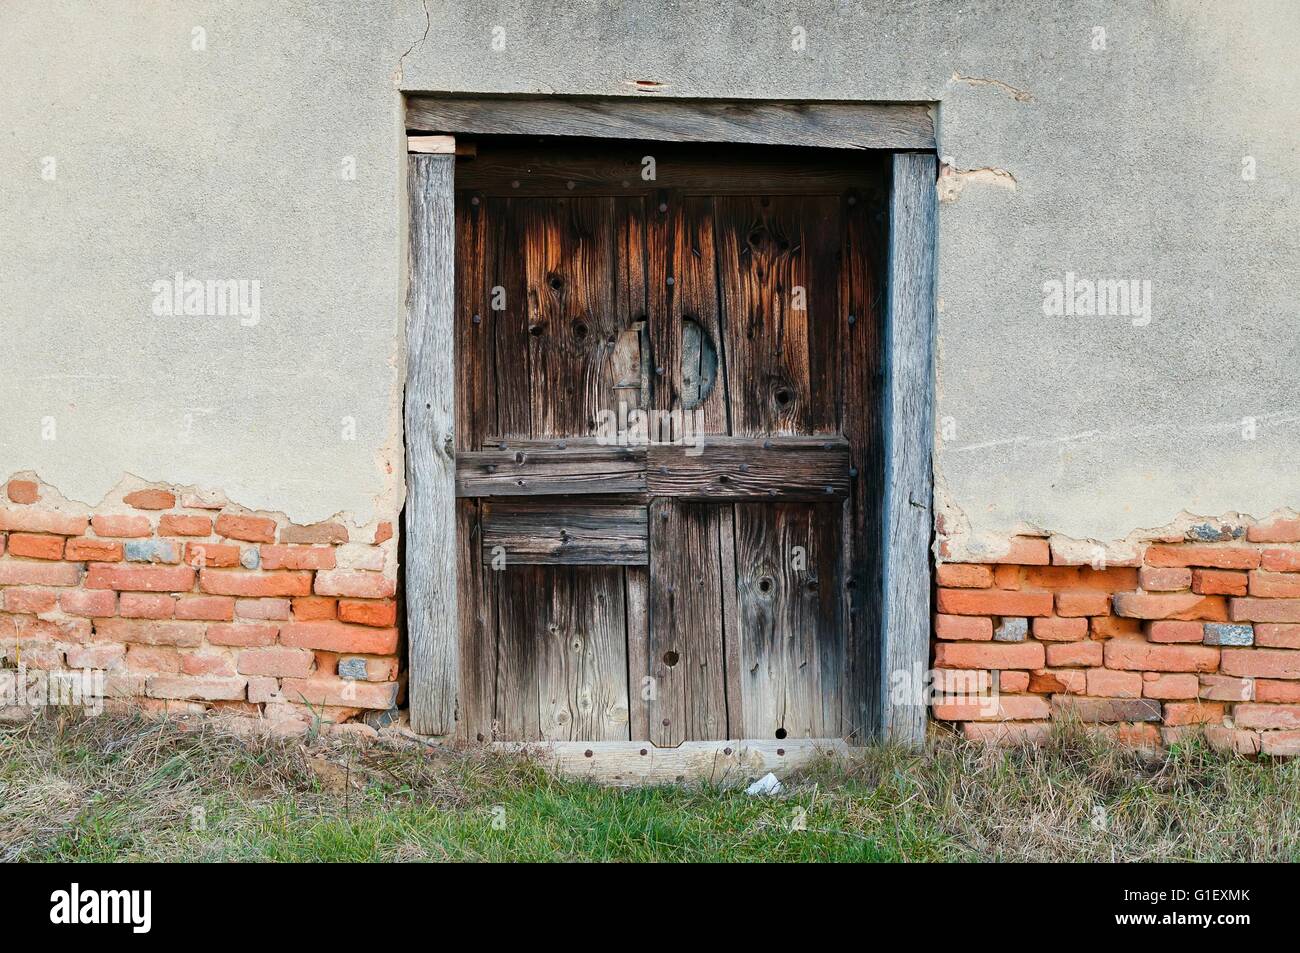 Vieille maison abandonnée avec porte en bois Banque D'Images